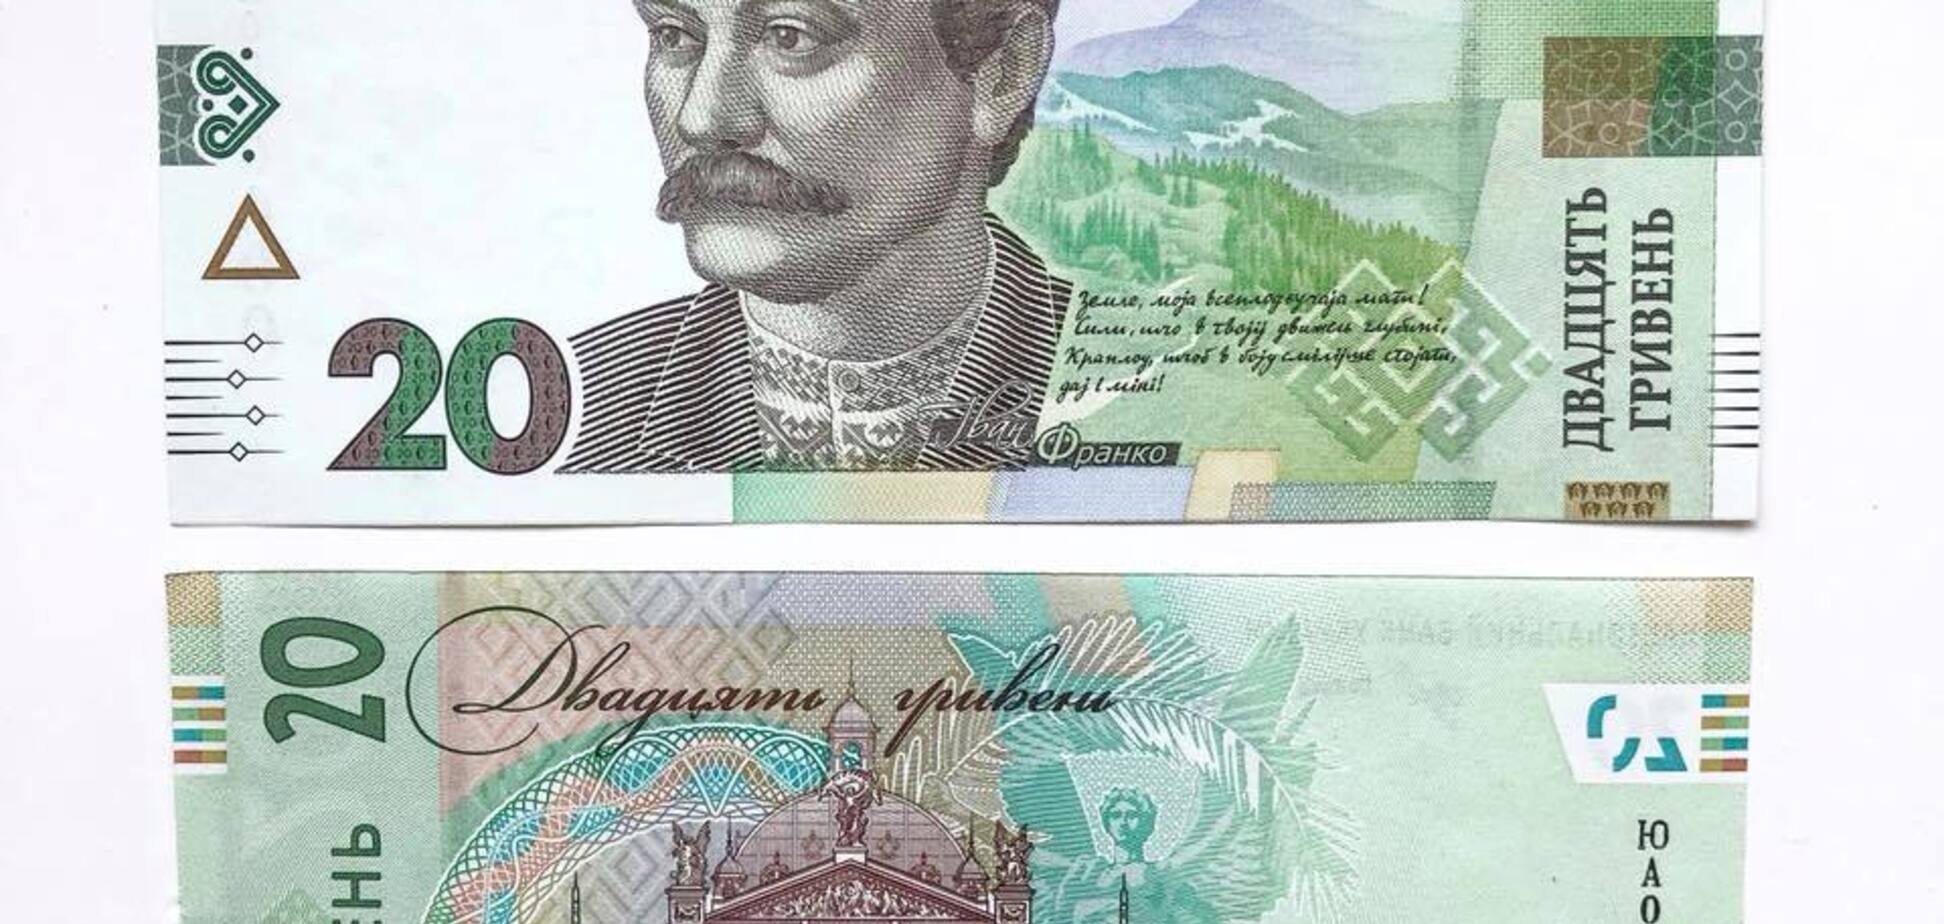 18 ознак: українцям пояснили, як розпізнати фальшиві гроші